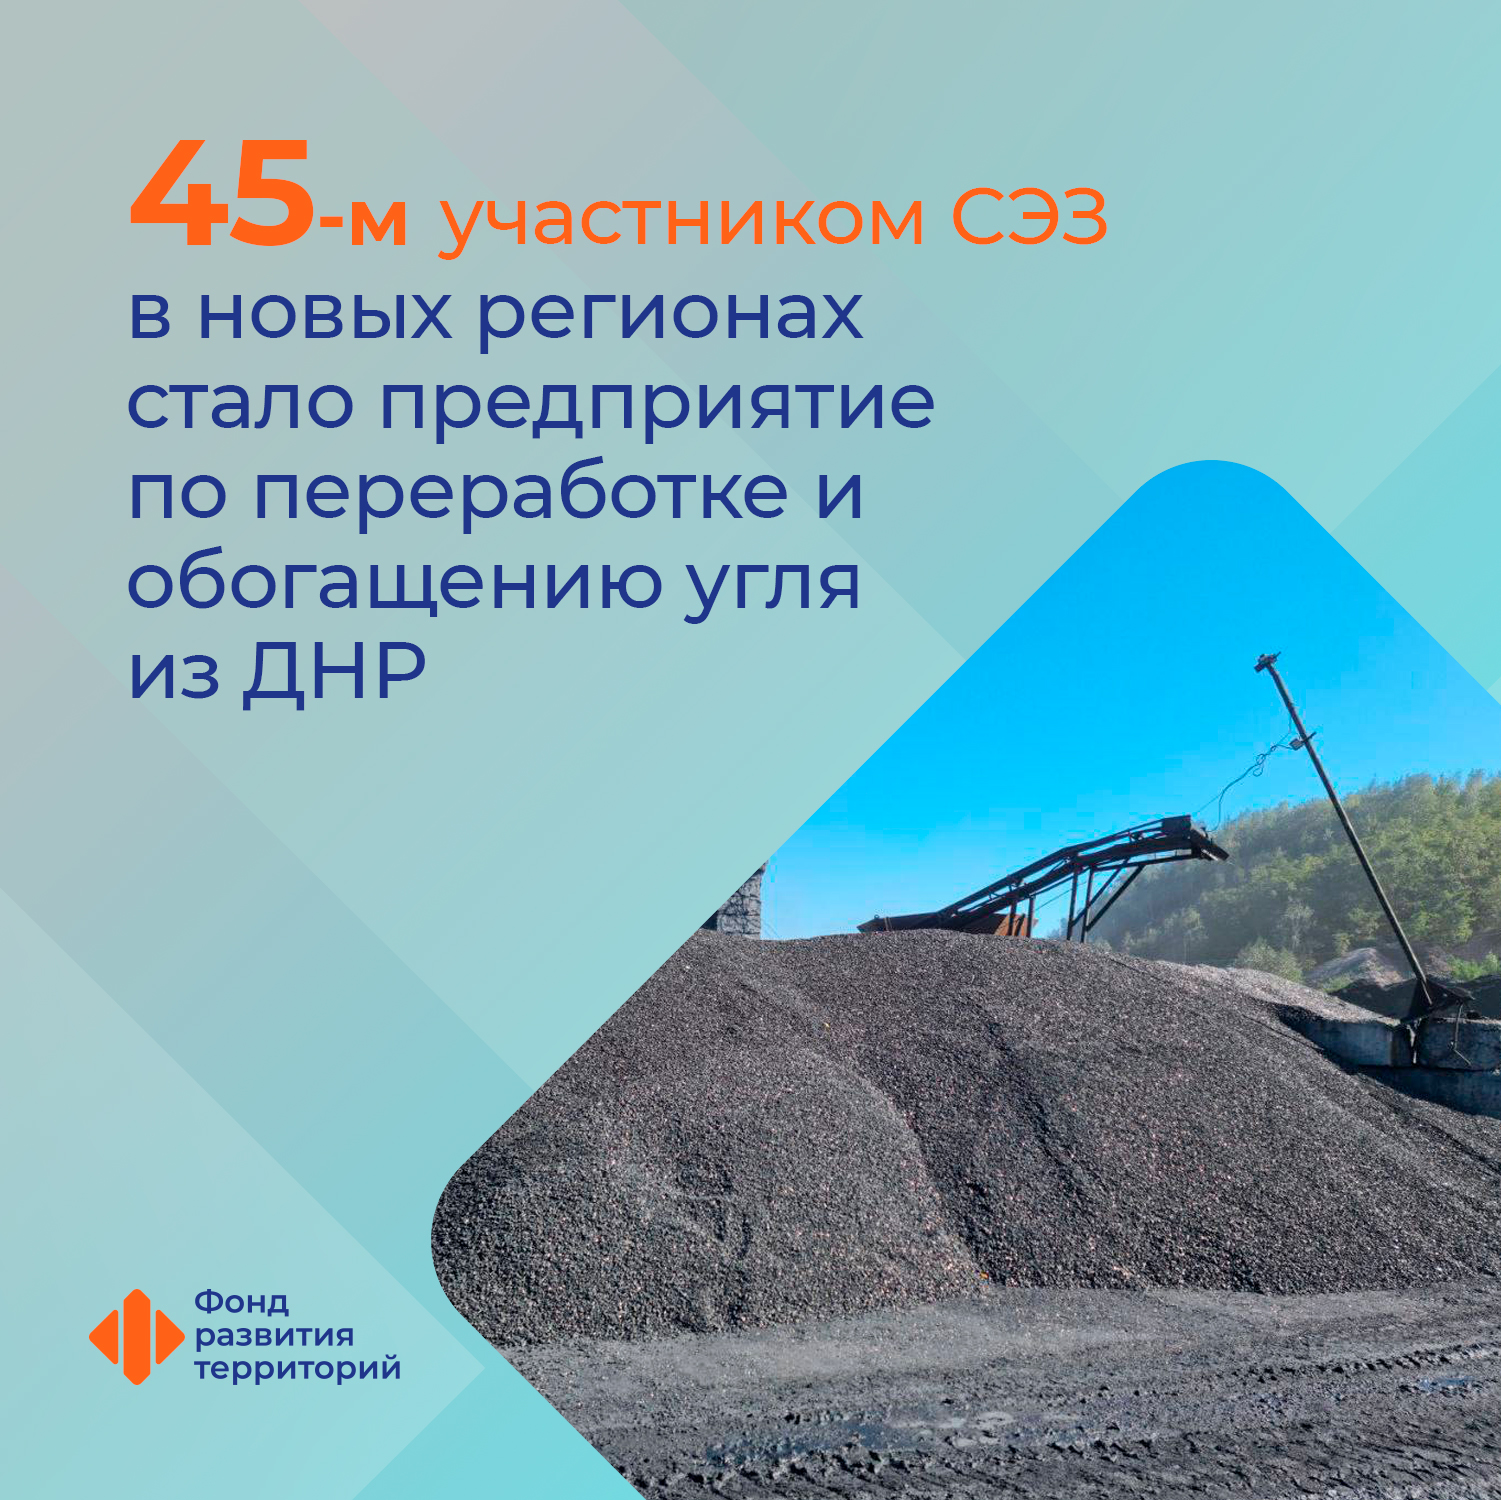 Ильшат Шагиахметов: Предприятие по переработке и обогащению угля из ДНР стало 45-м участником свободной экономической зоны в новых регионах